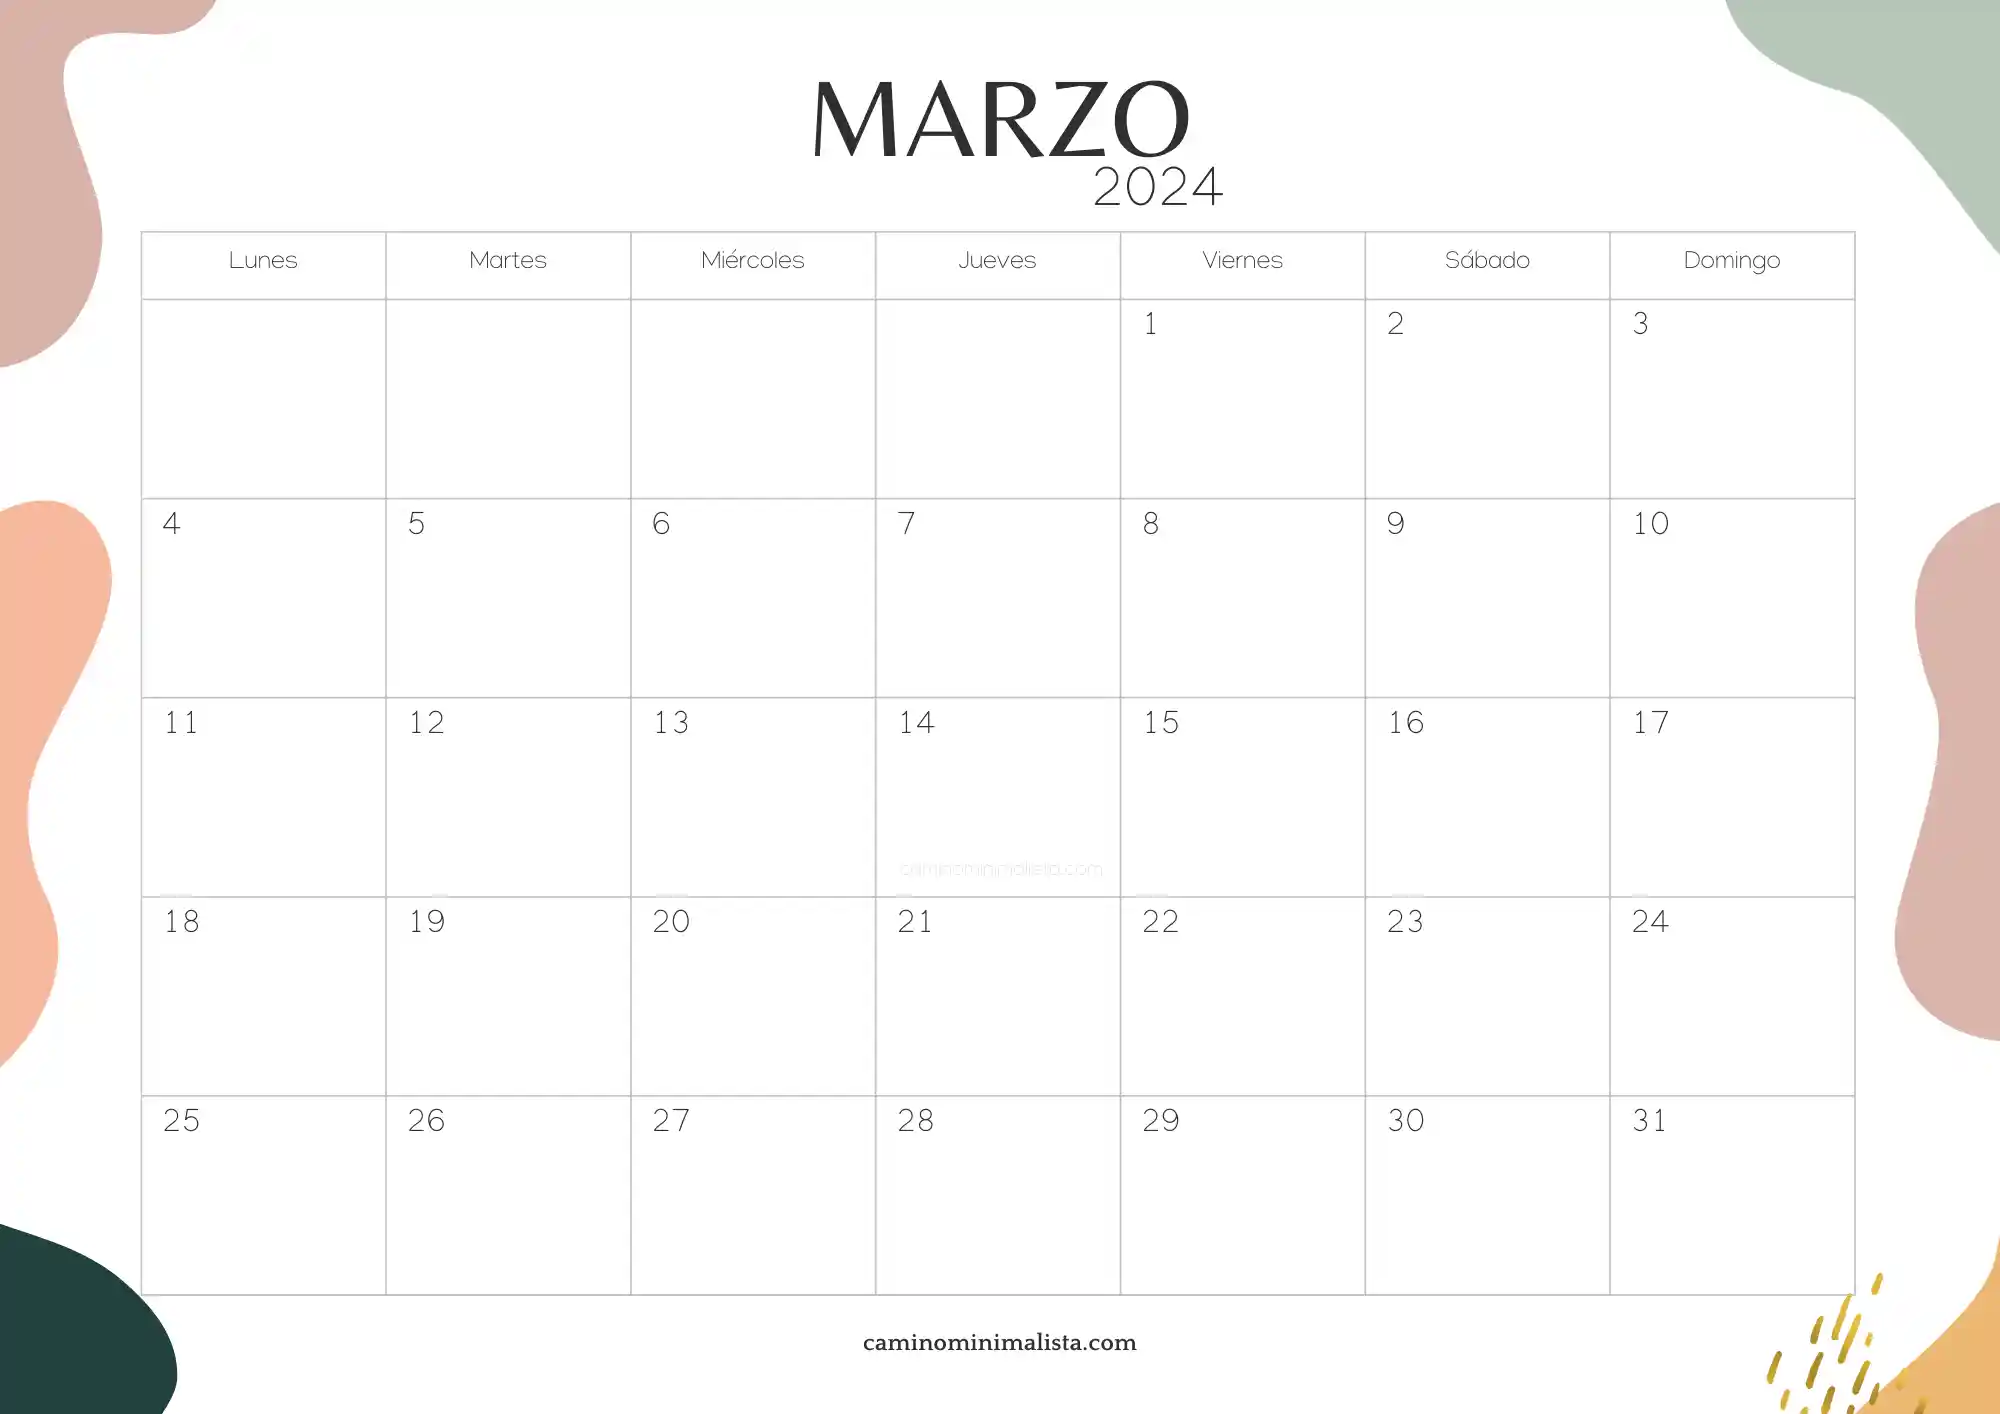 Almanaque Marzo 2024 Calendario 2024 para imprimir ❤️ Camino Minimalista